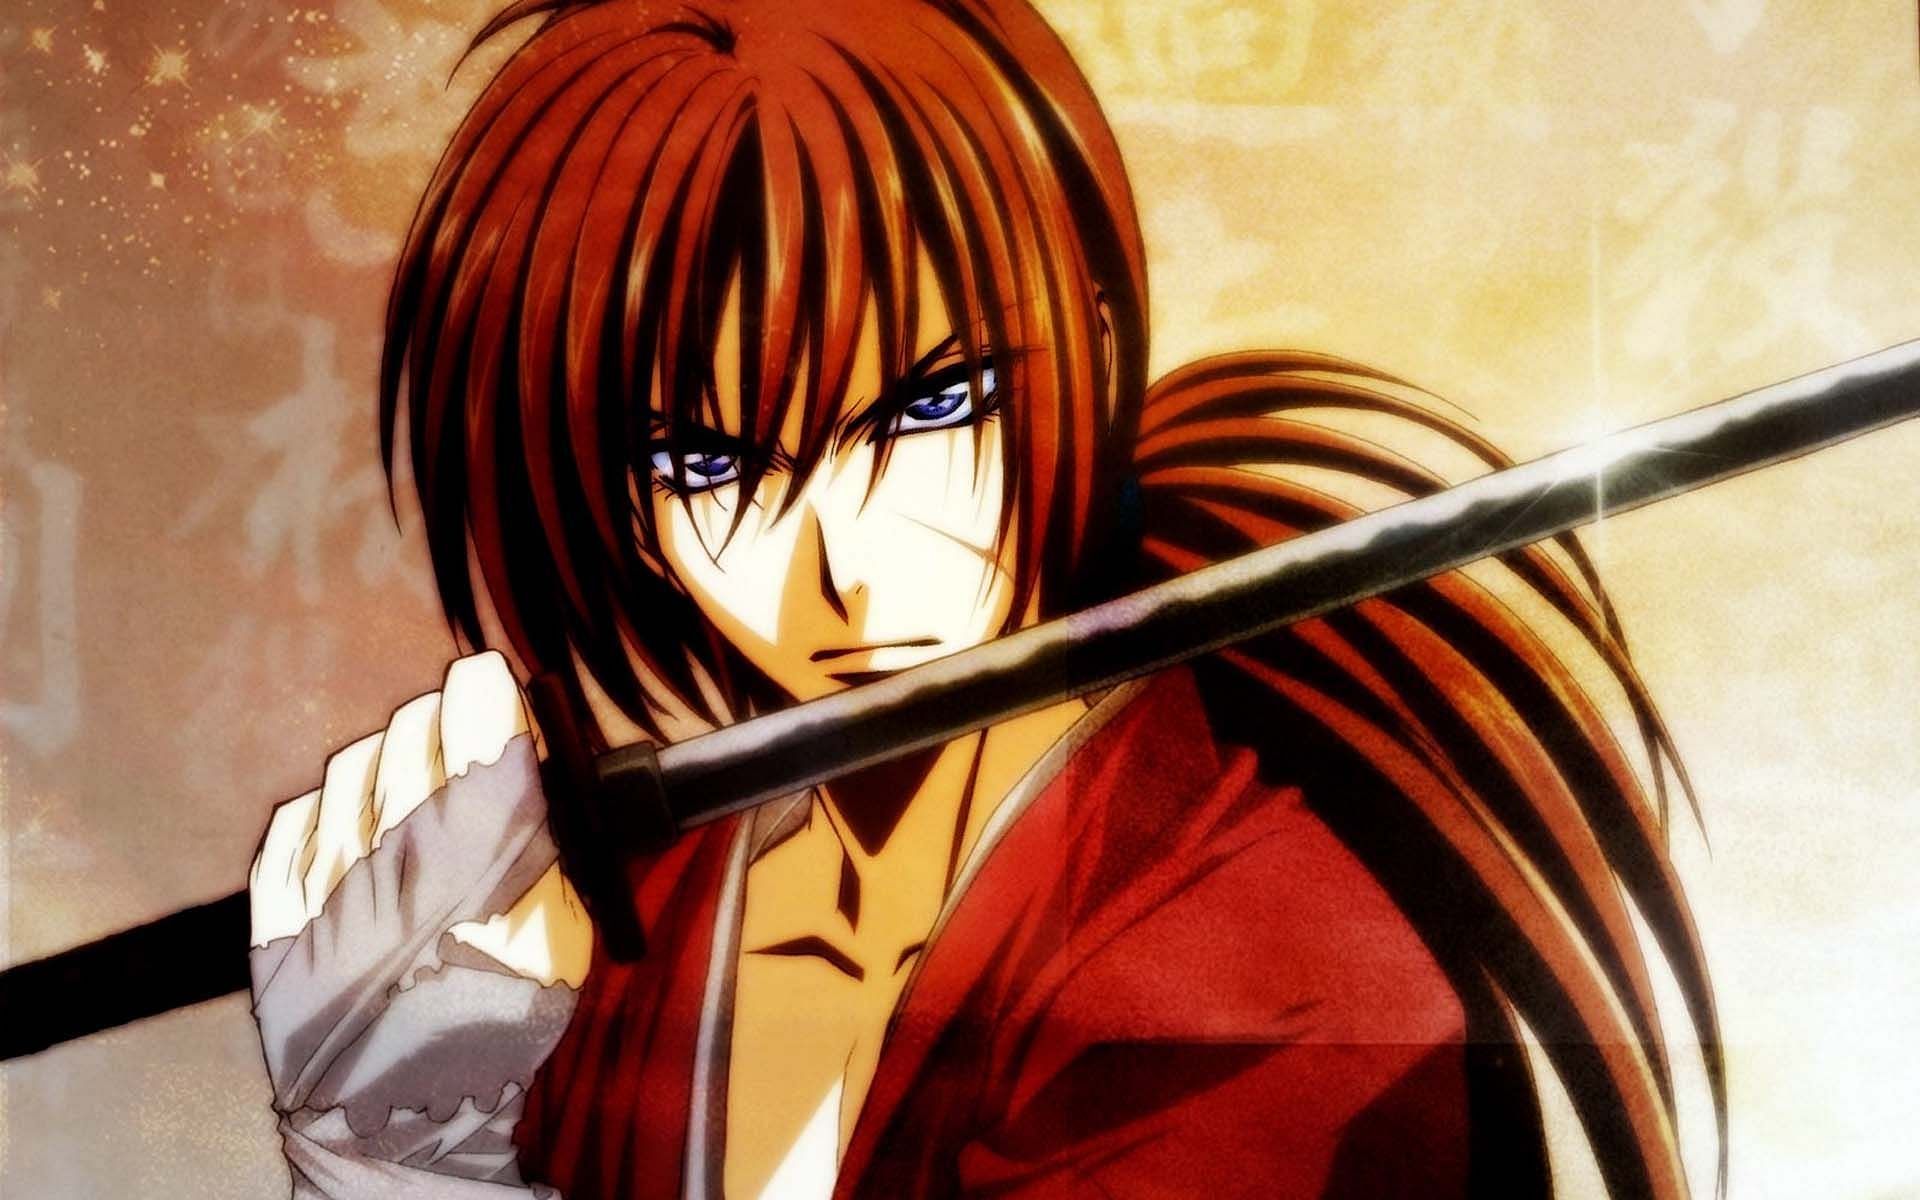 Himura Kenshin from Rurouni Kenshin (Image via Studio Gallop/Deen)